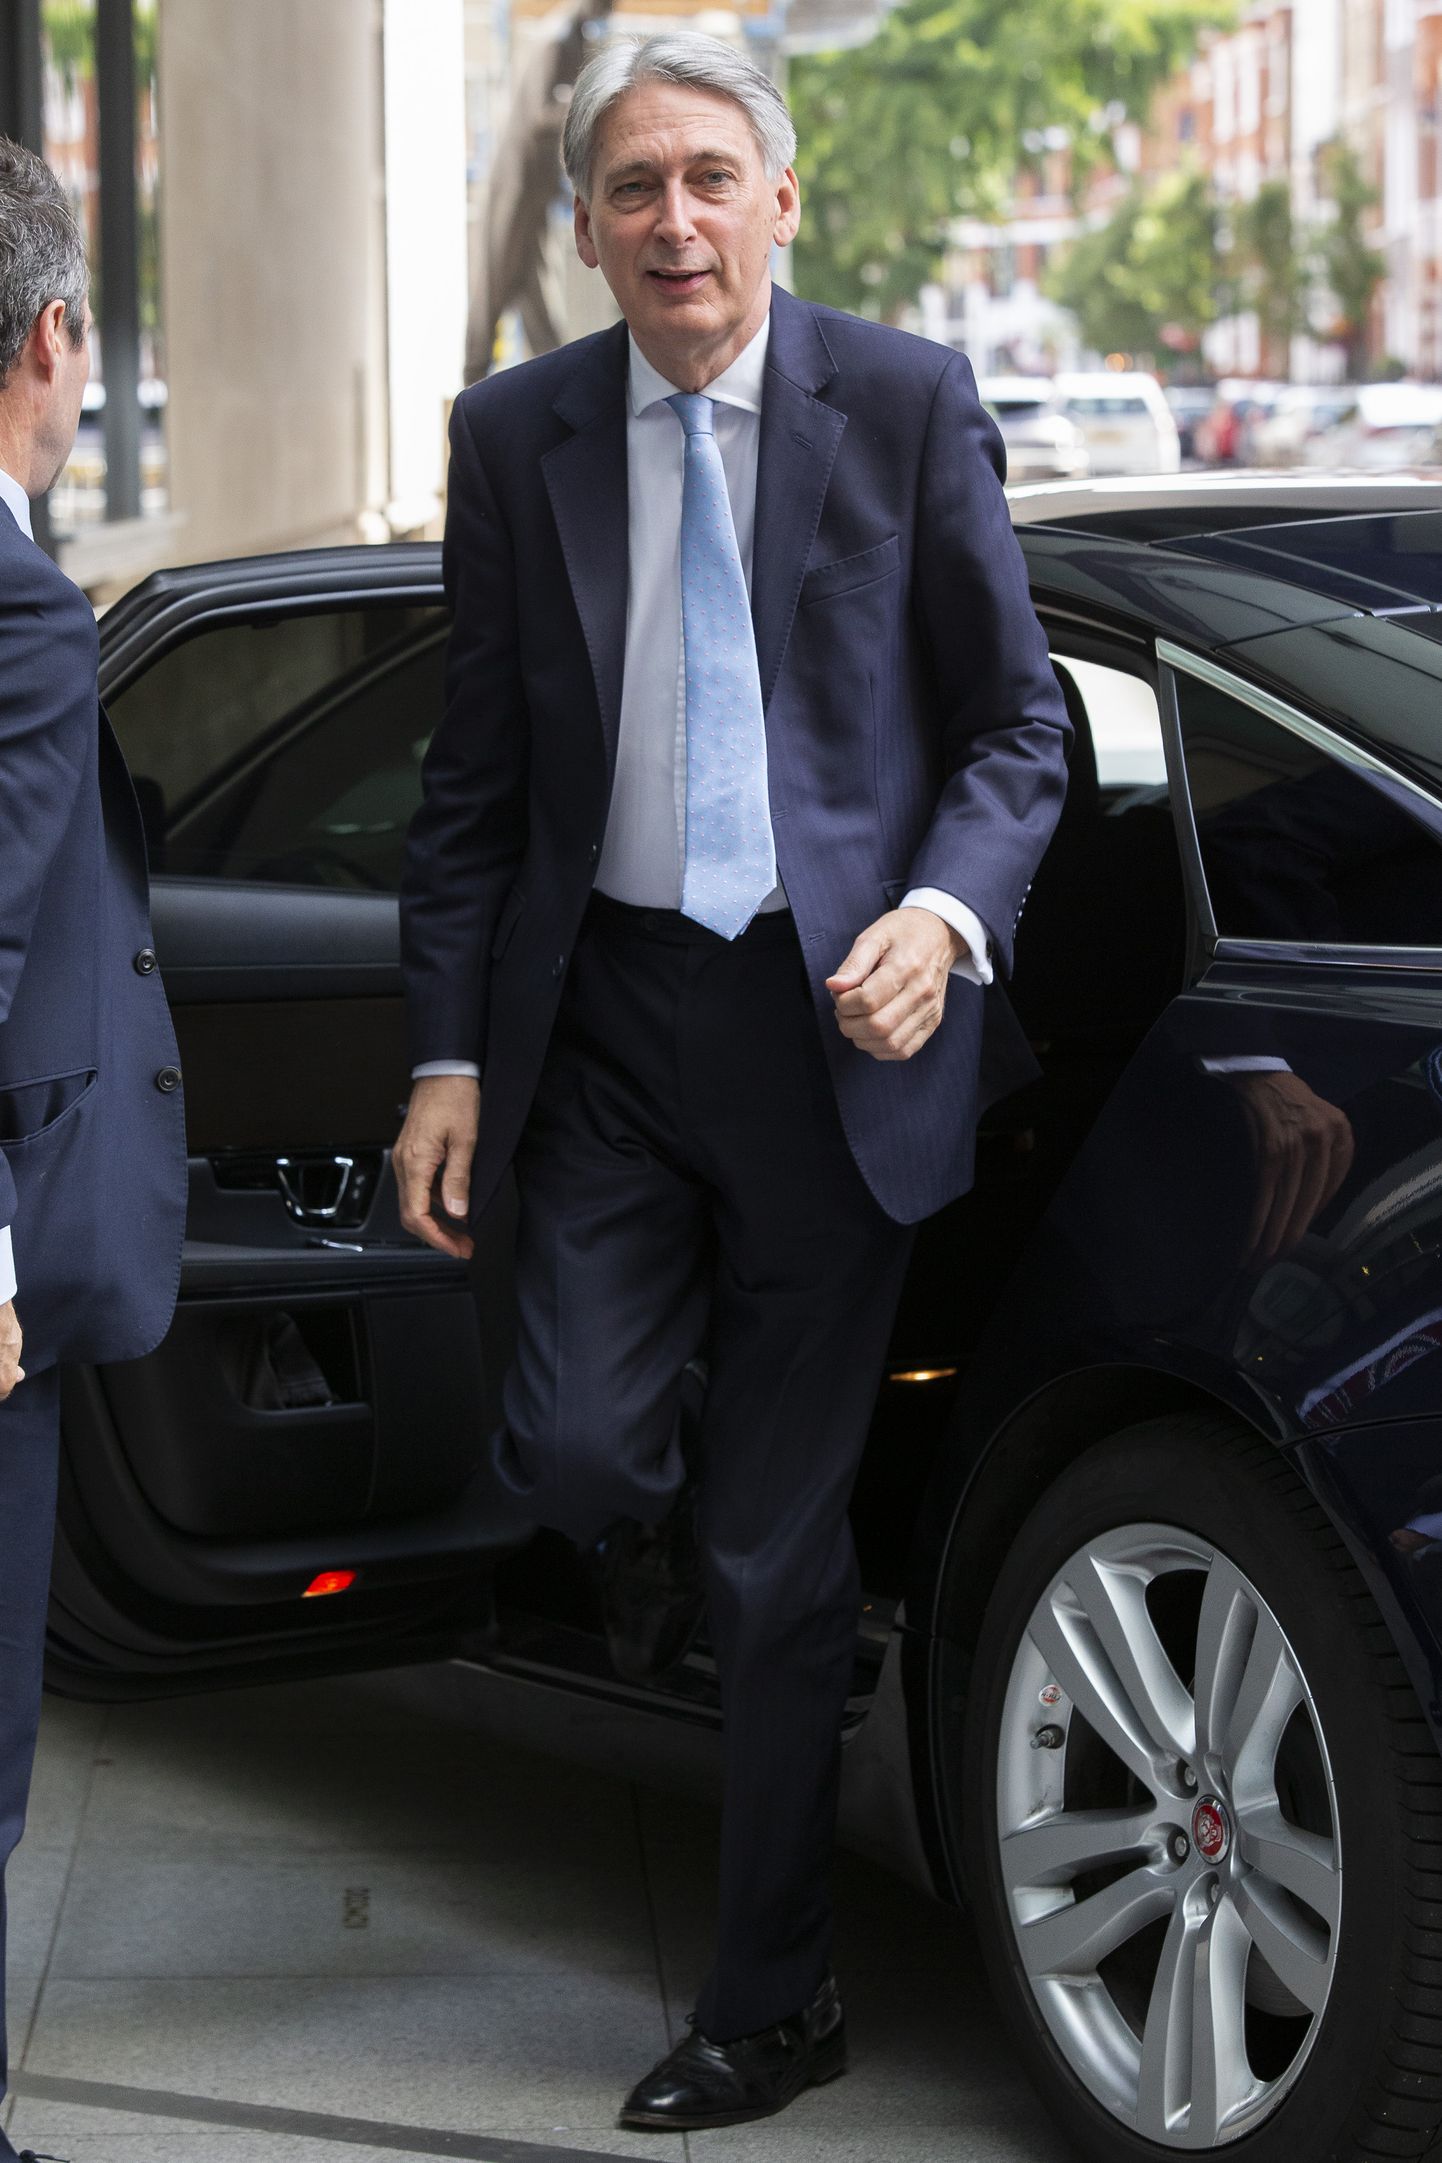 Briti rahandusminister Philip Hammond pühapäeval Londonis rahvusringhäälingu BBC peakorterisse saabumas.